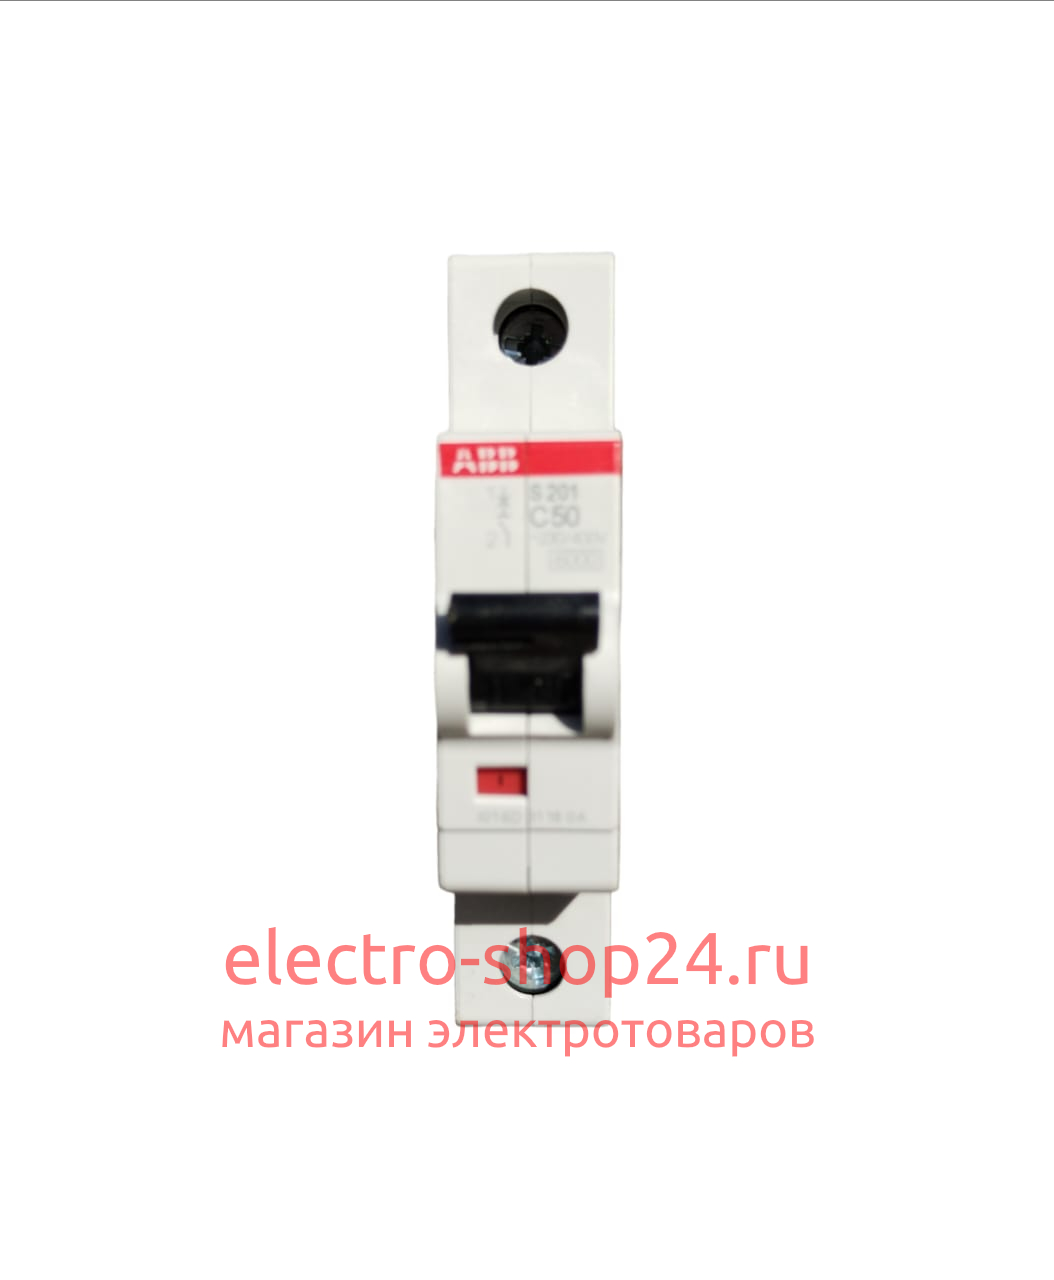 S201 C50 Автоматический выключатель 1-полюсный 50А 6кА (хар-ка C) ABB 2CDS251001R0504 2CDS251001R0504 - магазин электротехники Electroshop